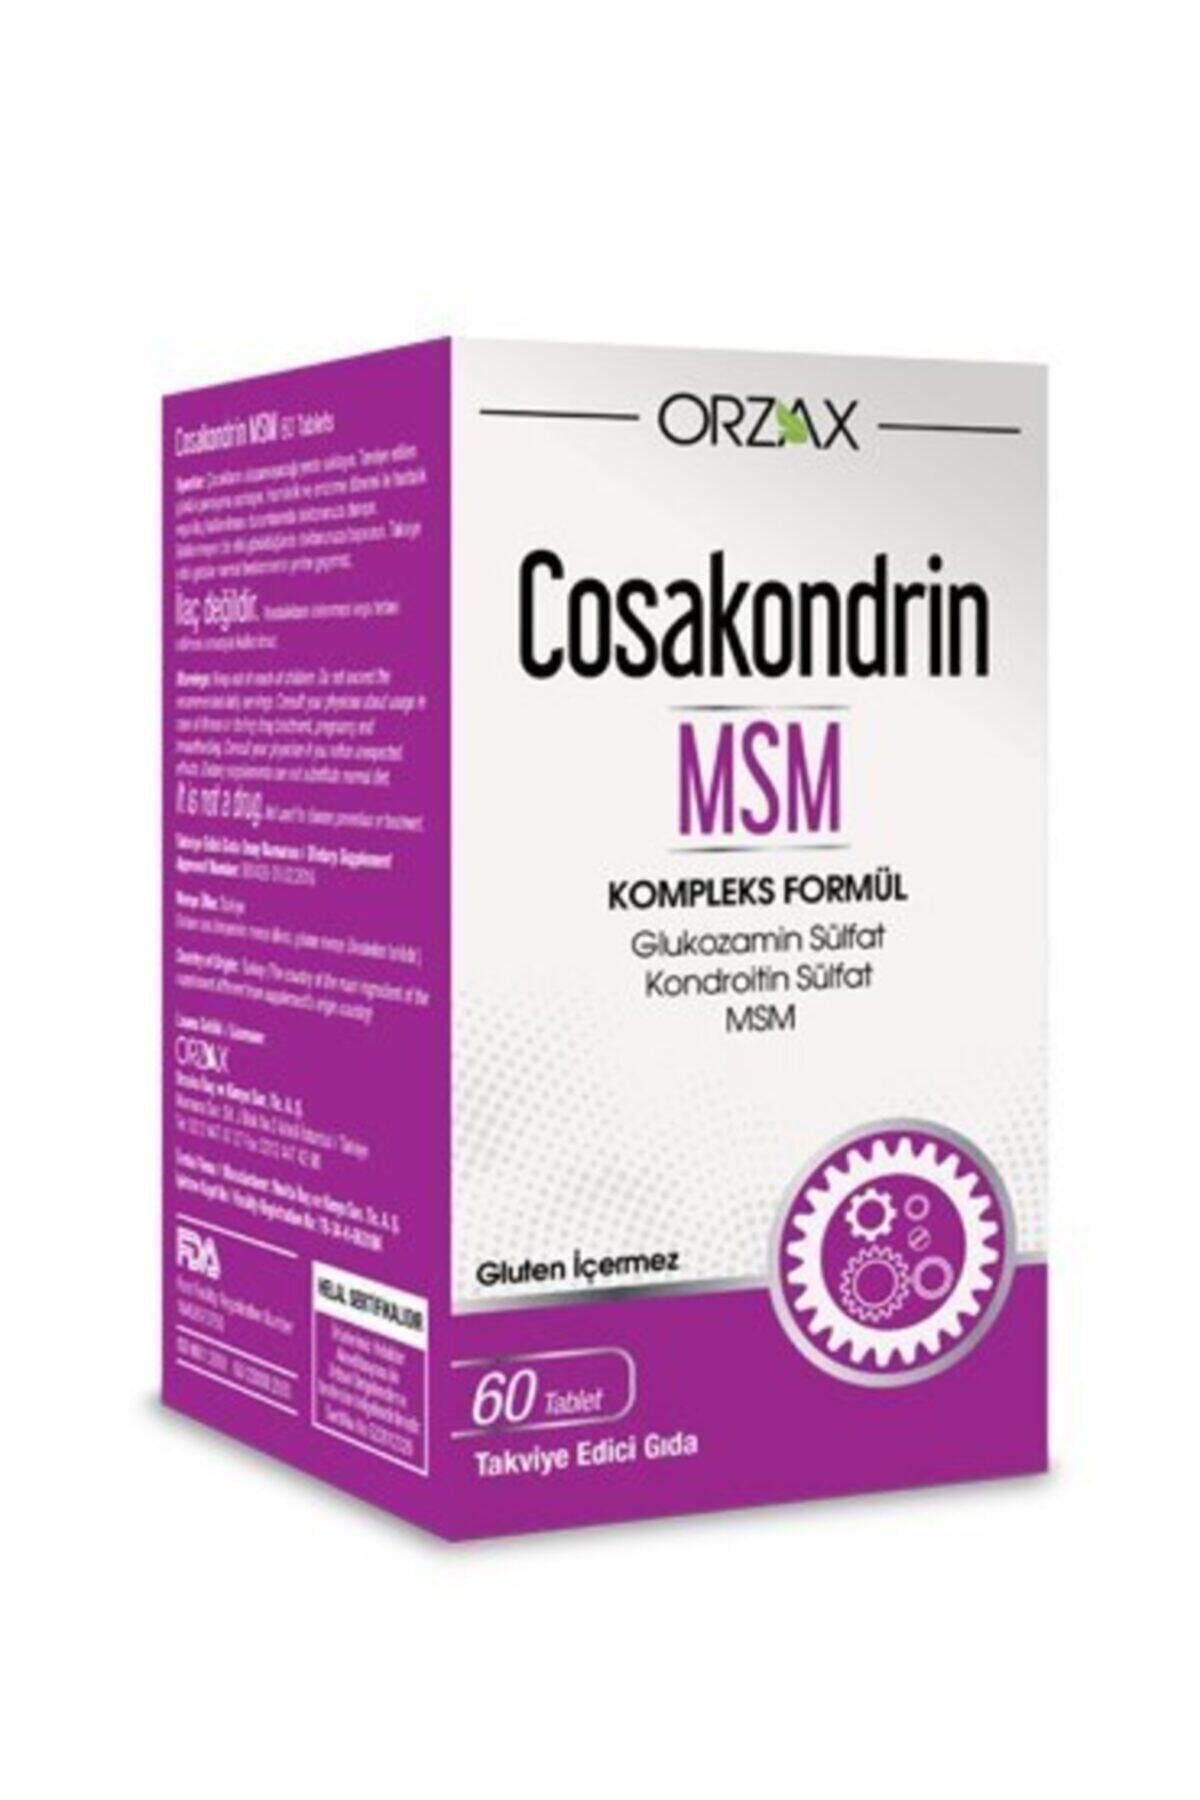 Cosakondrin Msm (60 Tablet)